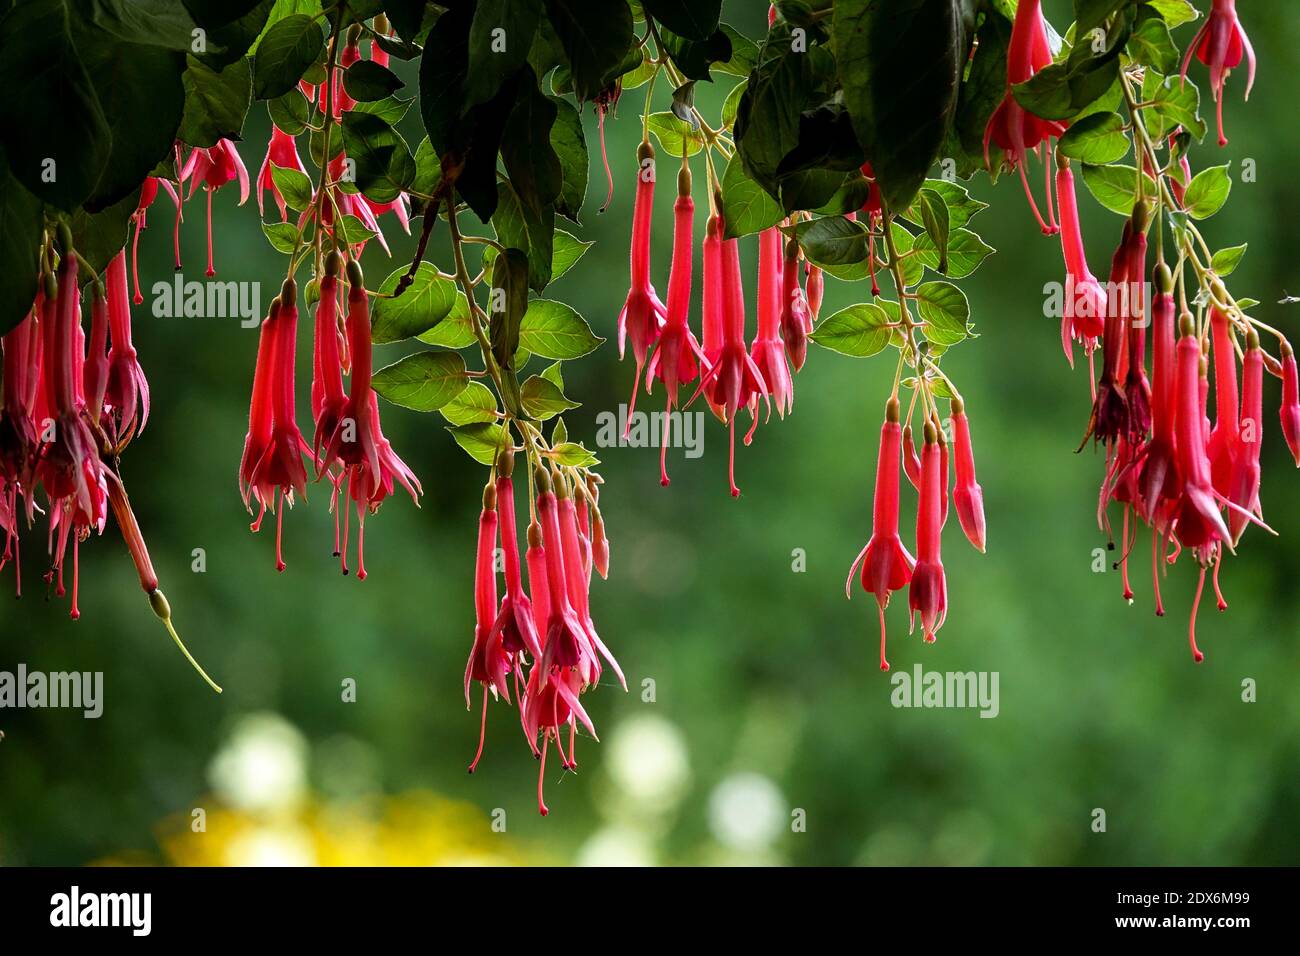 Fiori rossi appesi alla pianta verde nel giardino estivo, sfondo sfocato Foto Stock